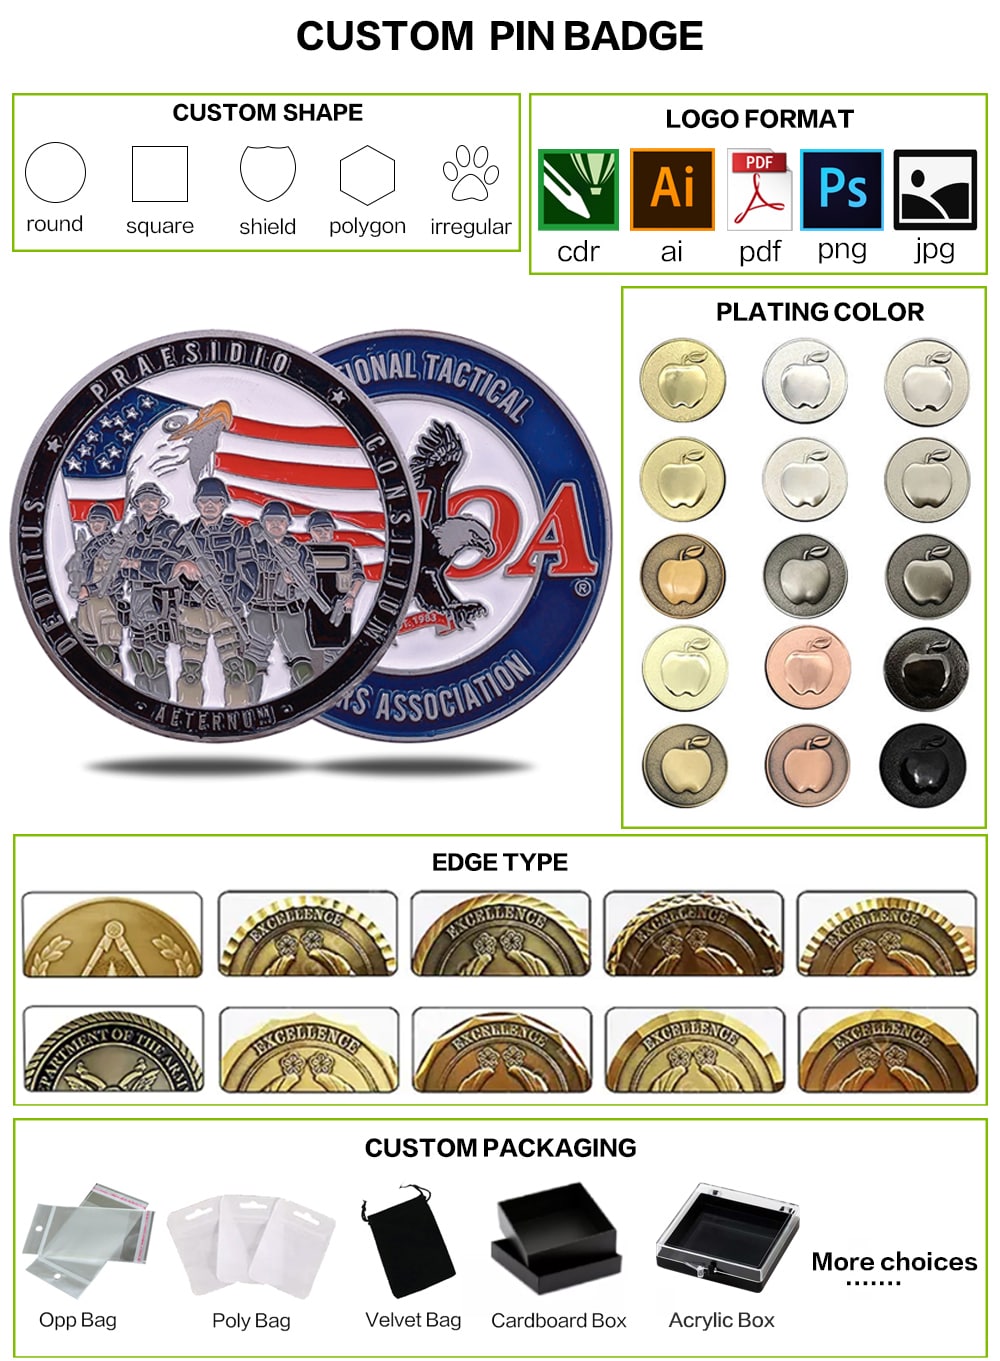 アメリカ国旗チャレンジコイン